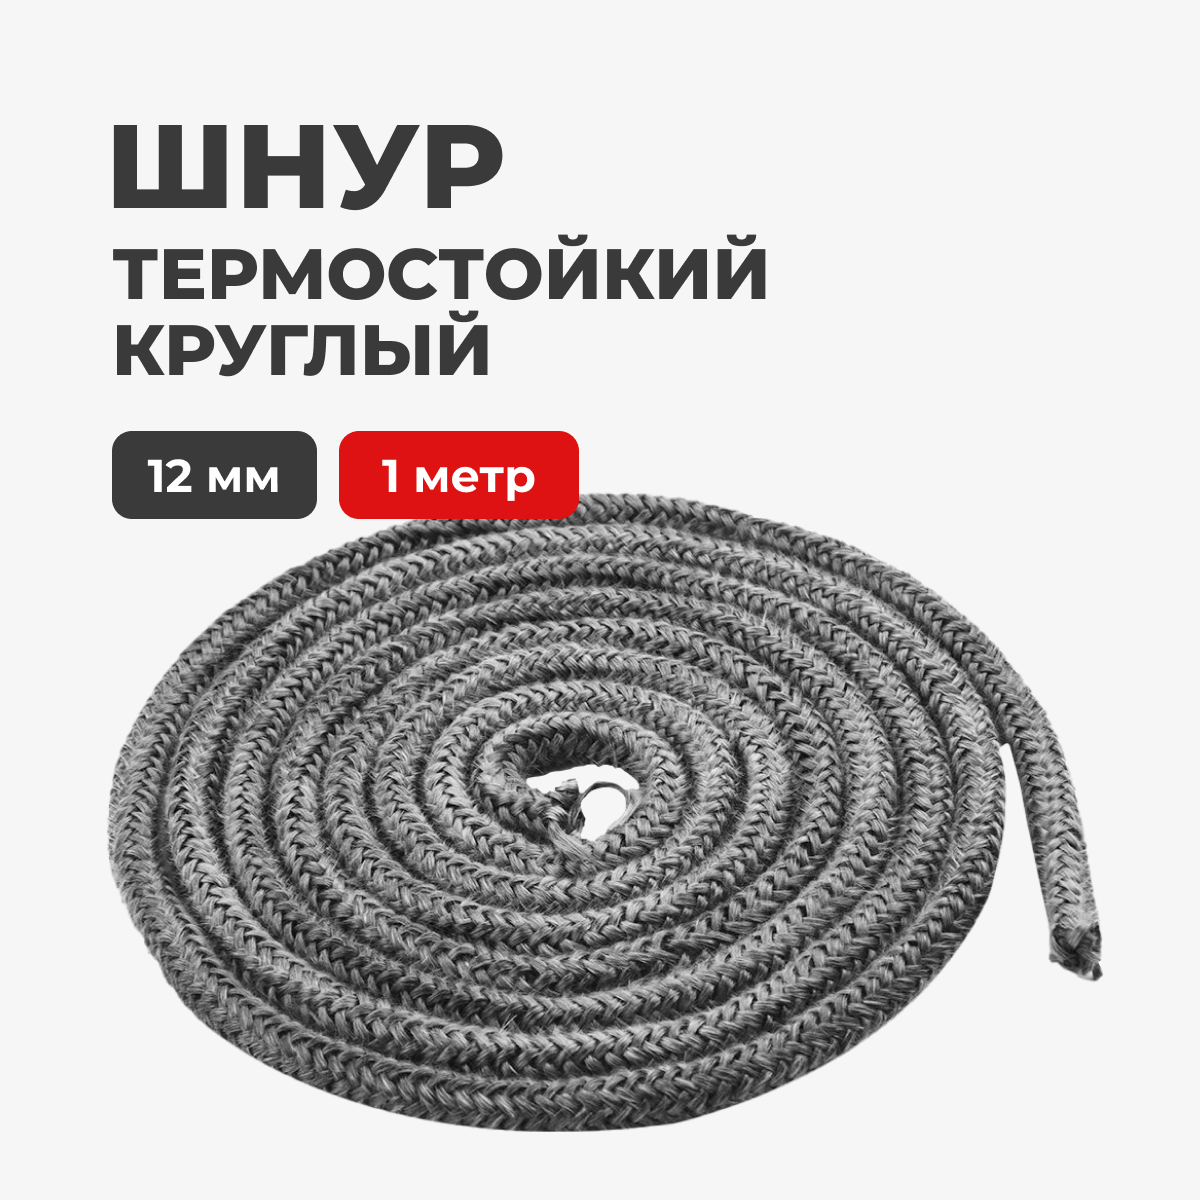 Шнур термостойкий для печей и каминов R-SAUNA круглый 12 мм. 1 метр, 24764 патрон декоративный шнур 1 метр e27 чёрный жемчуг